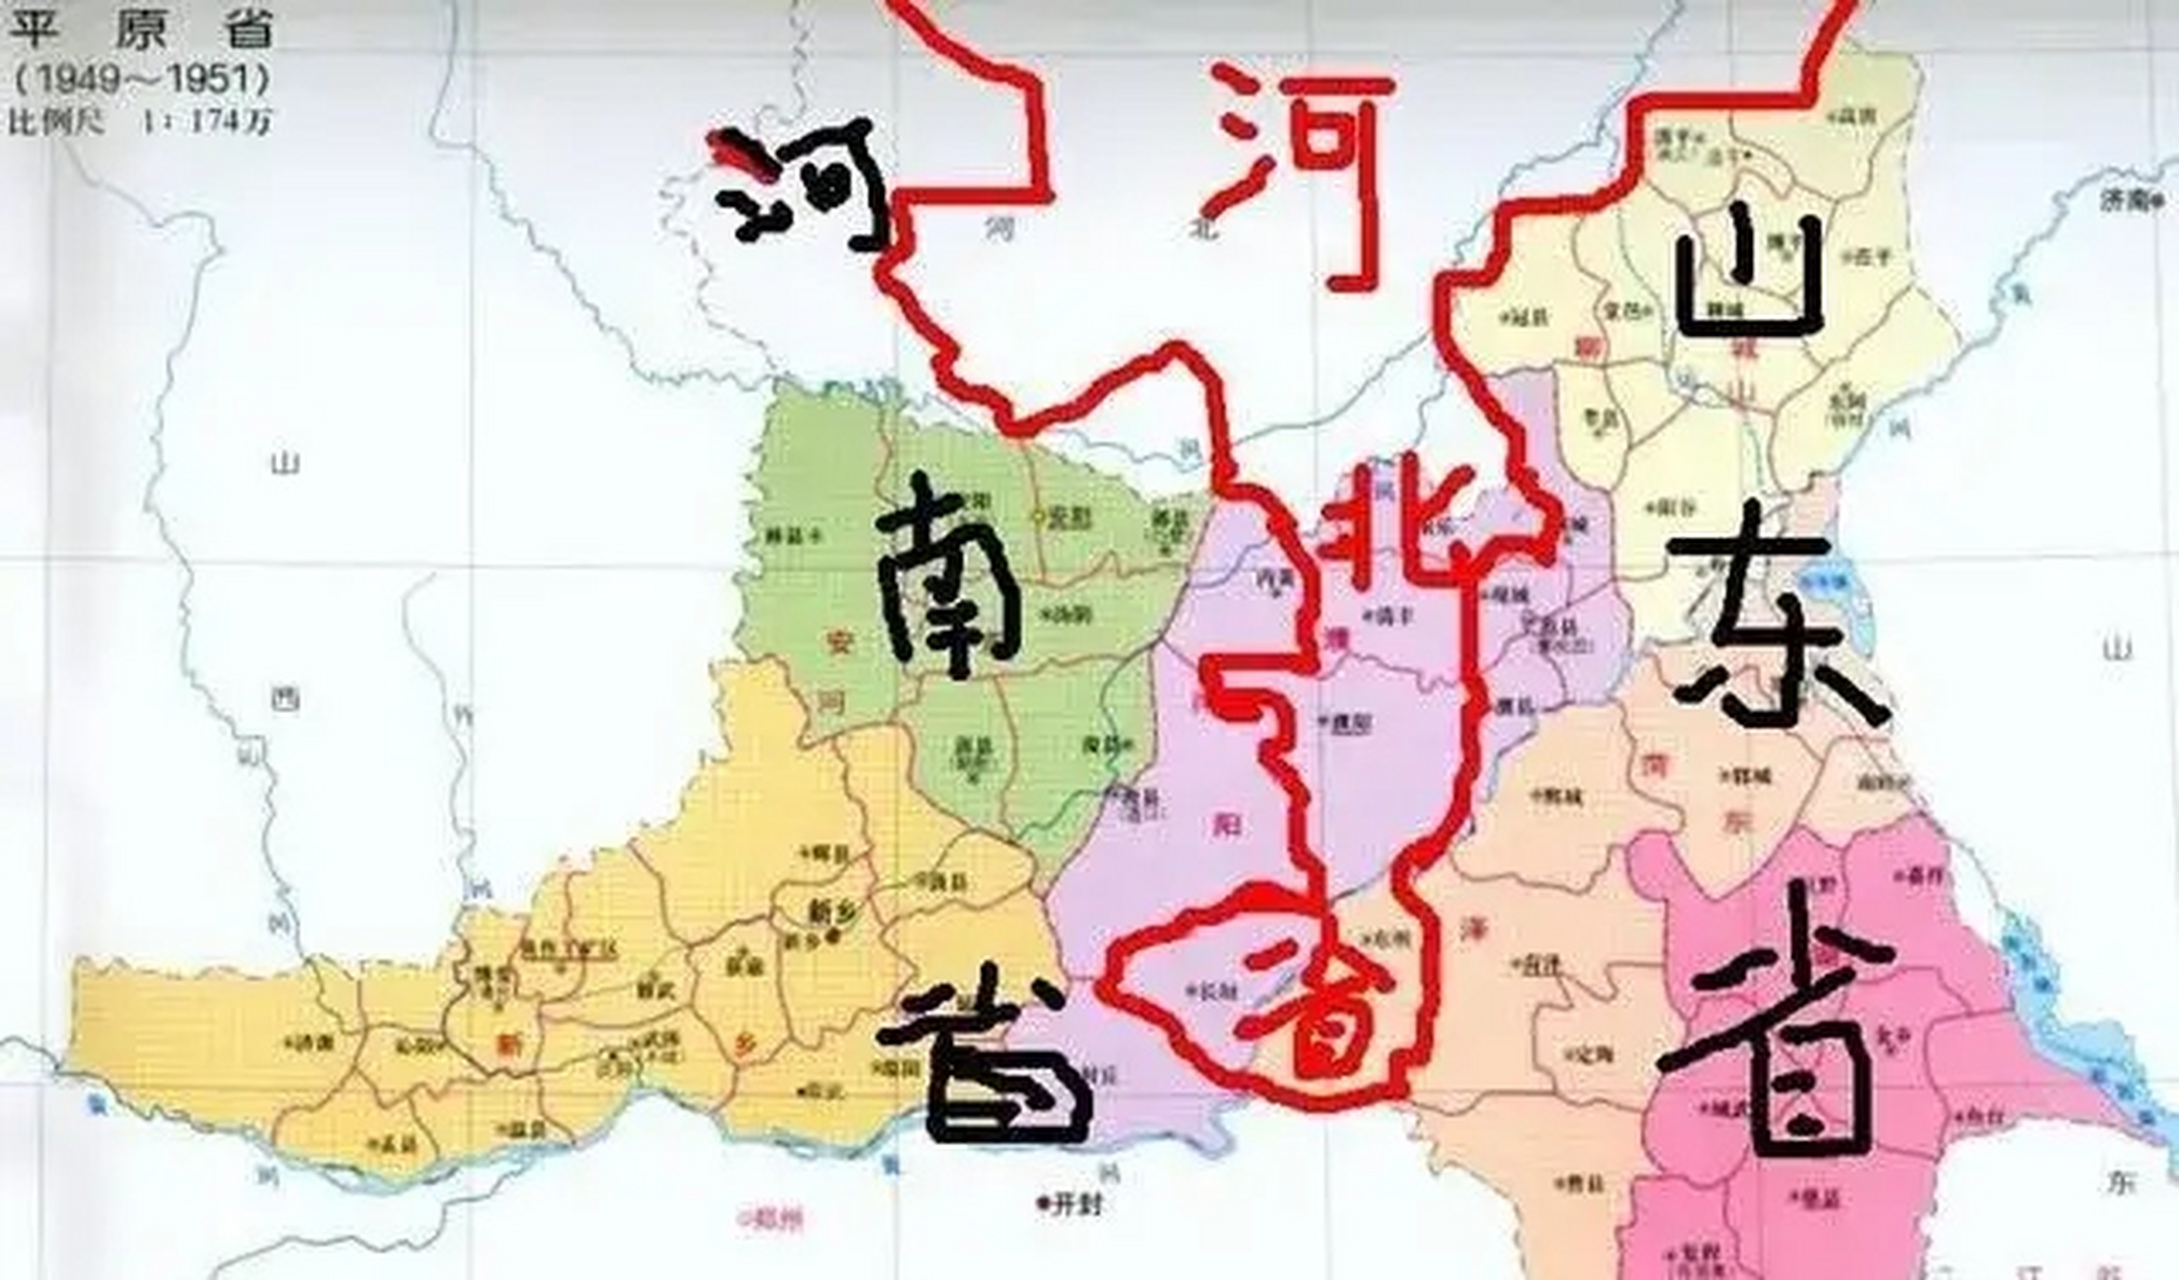 1949一1951年的平原省行政区划